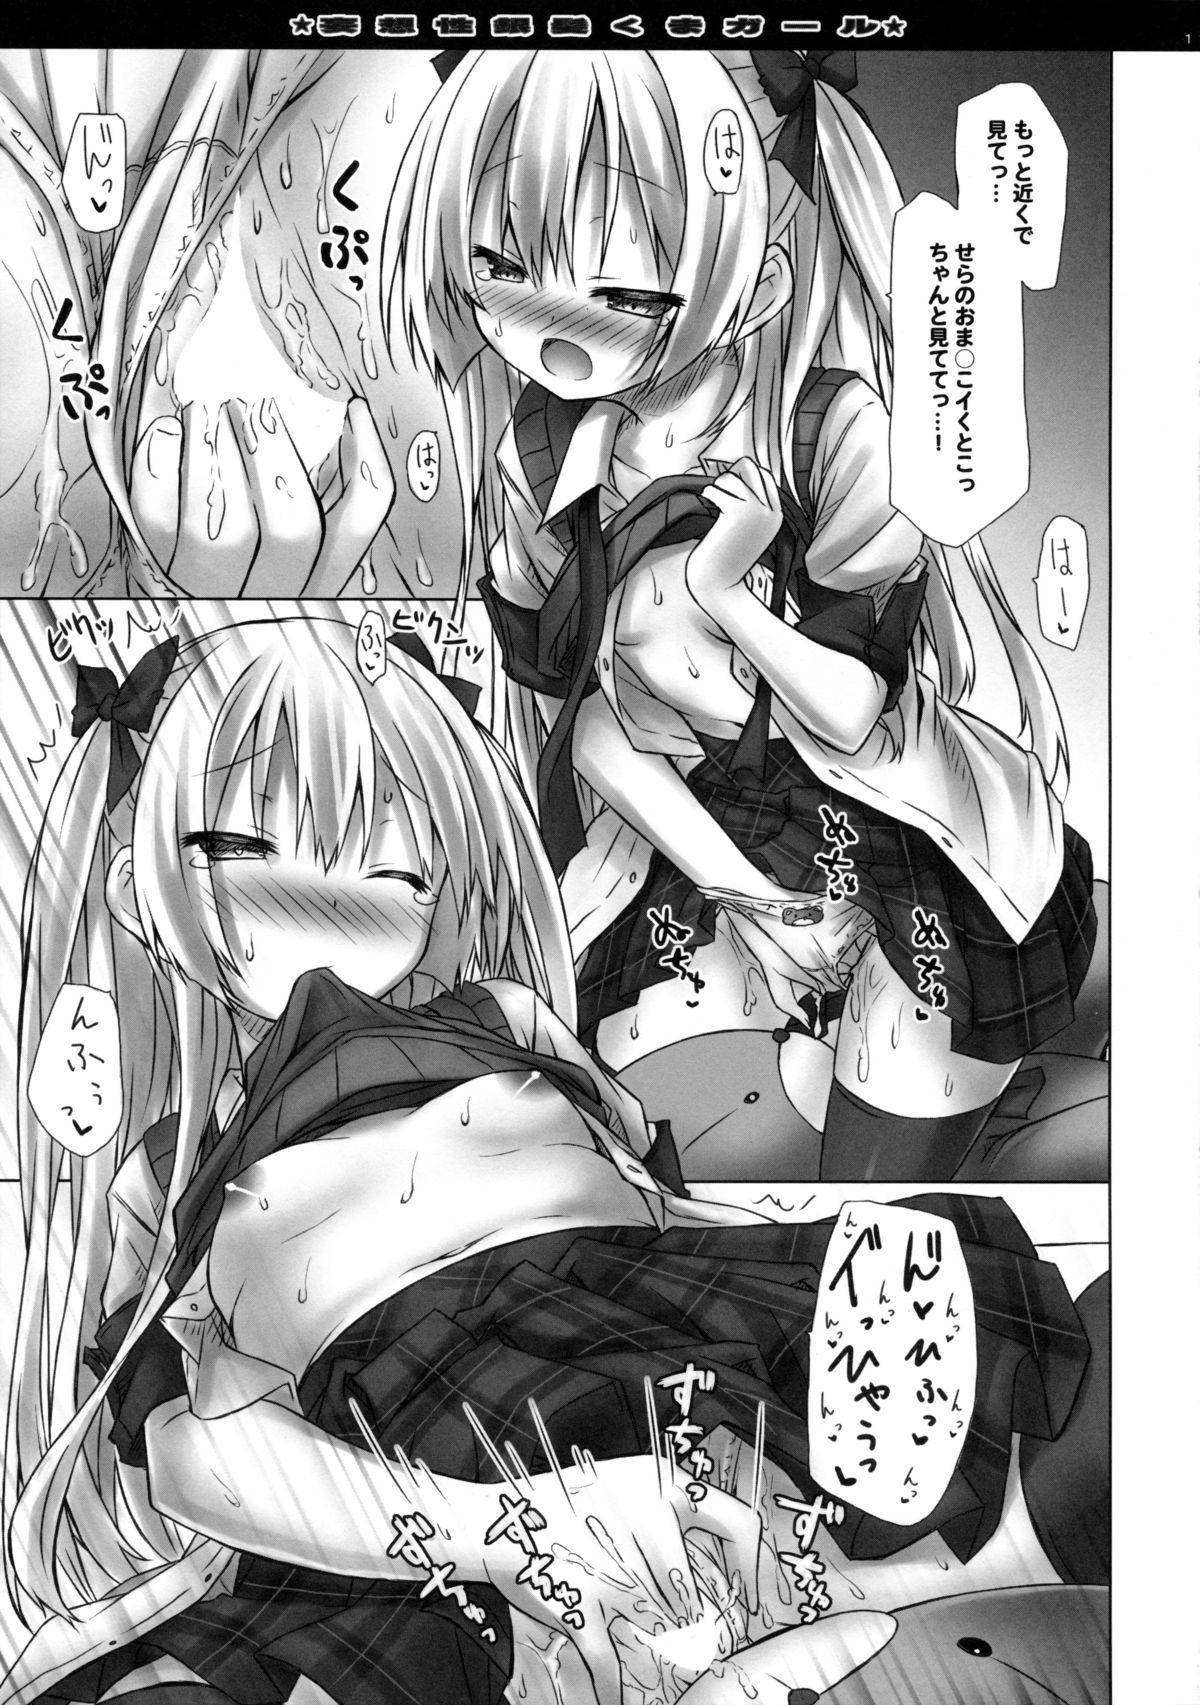 Stripping Mousou sei Ginpatsu Kuma Girl Juicy - Page 11